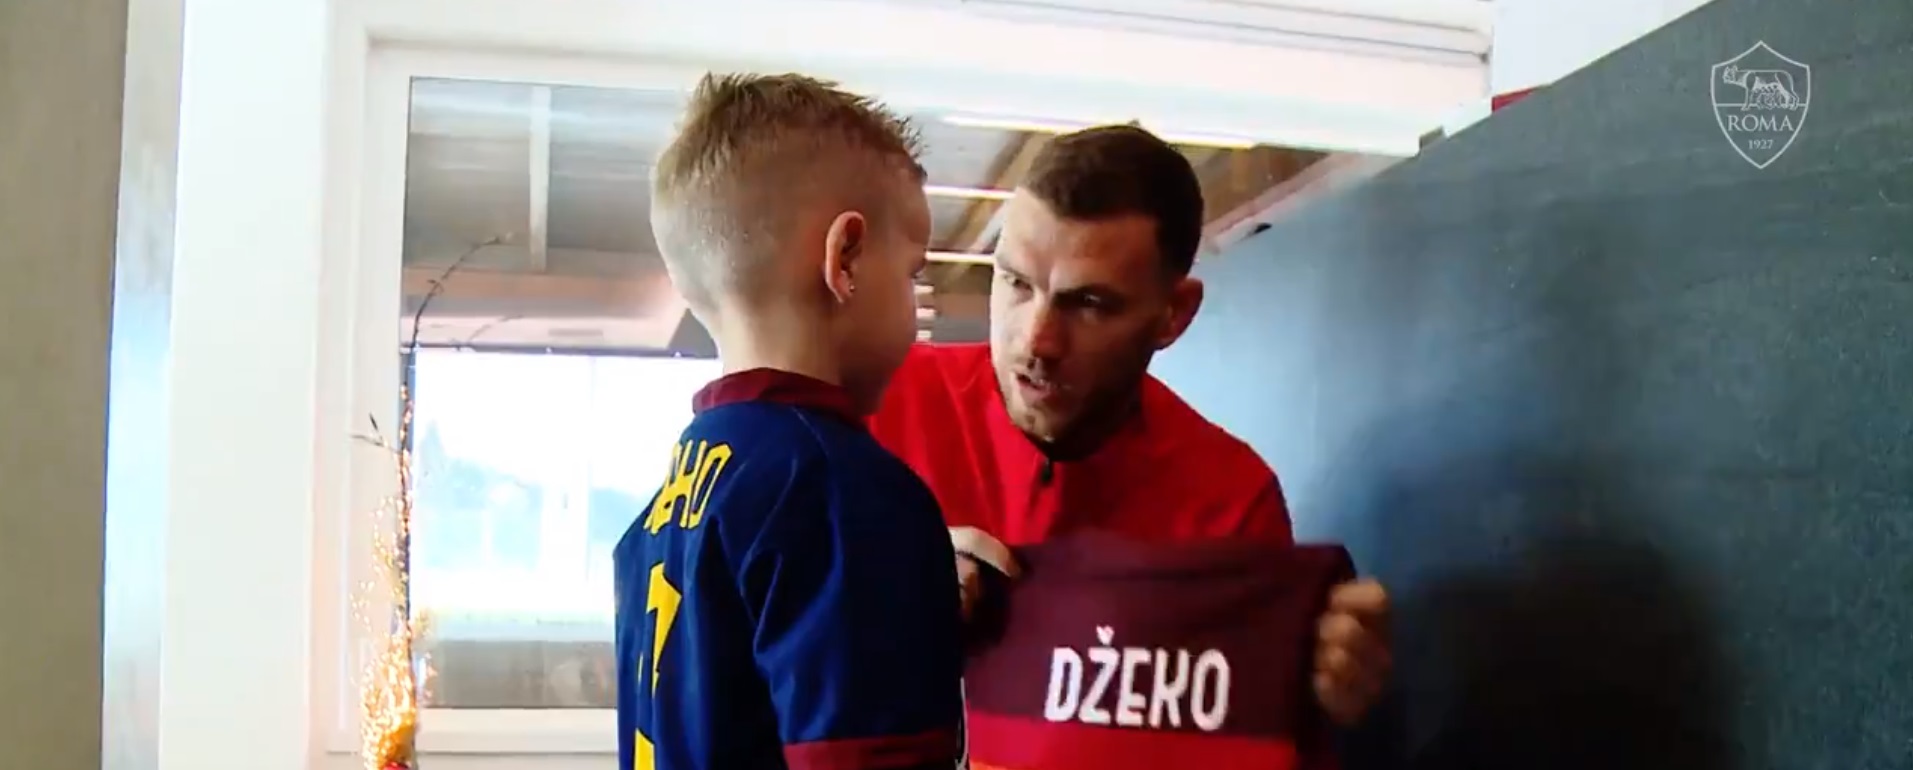 Dzeko incontra a Trigoria il piccolo David (VIDEO) | Giallorossi.net,  notizie esclusive, news e calciomercato